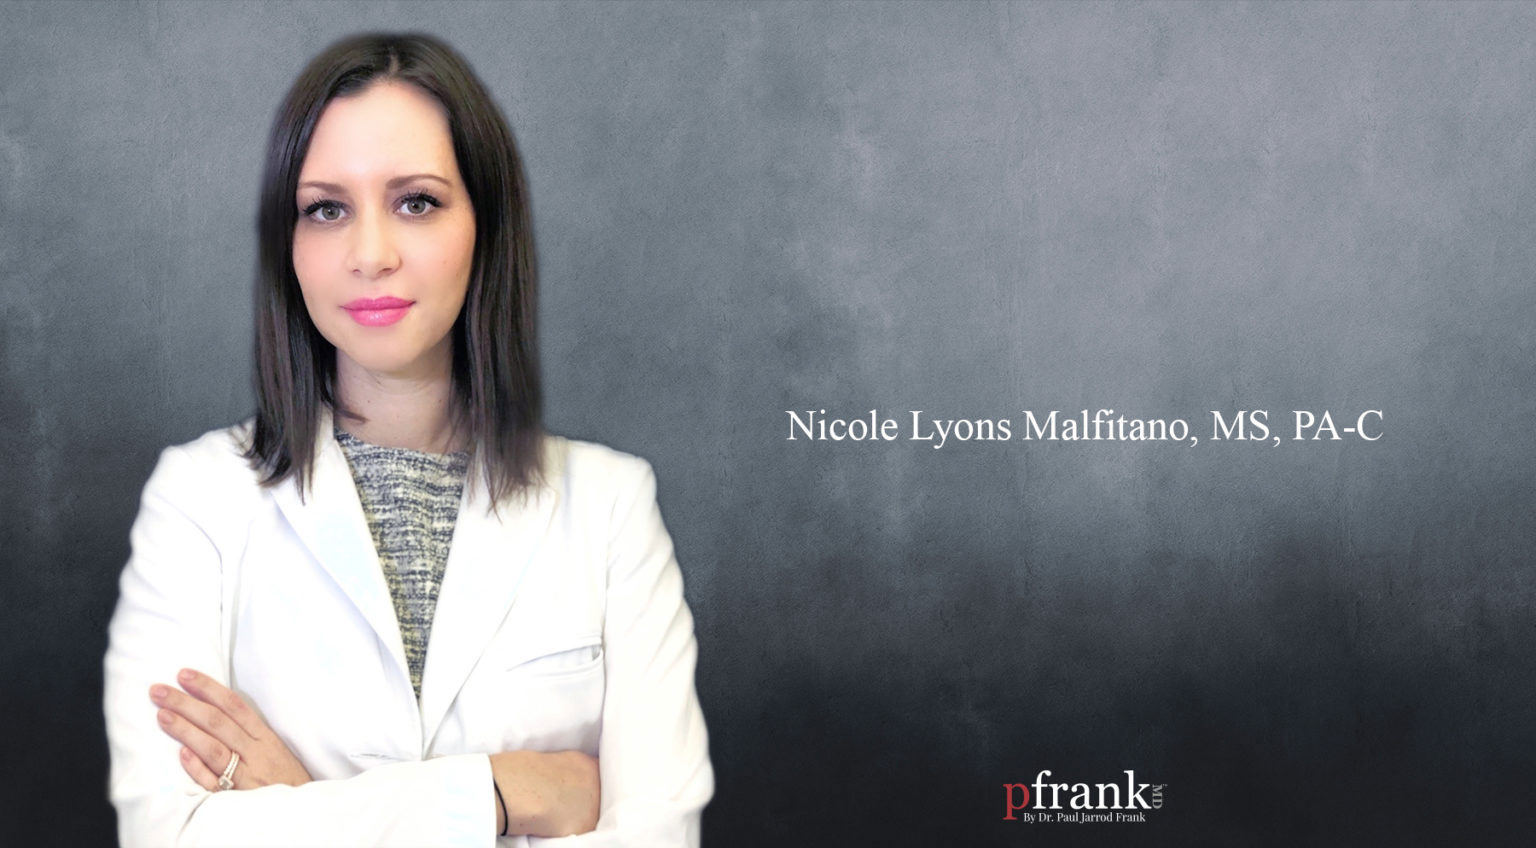 Nicole Lyons Malfitano, MS, PA-C of PFrankMD in New York City, NY